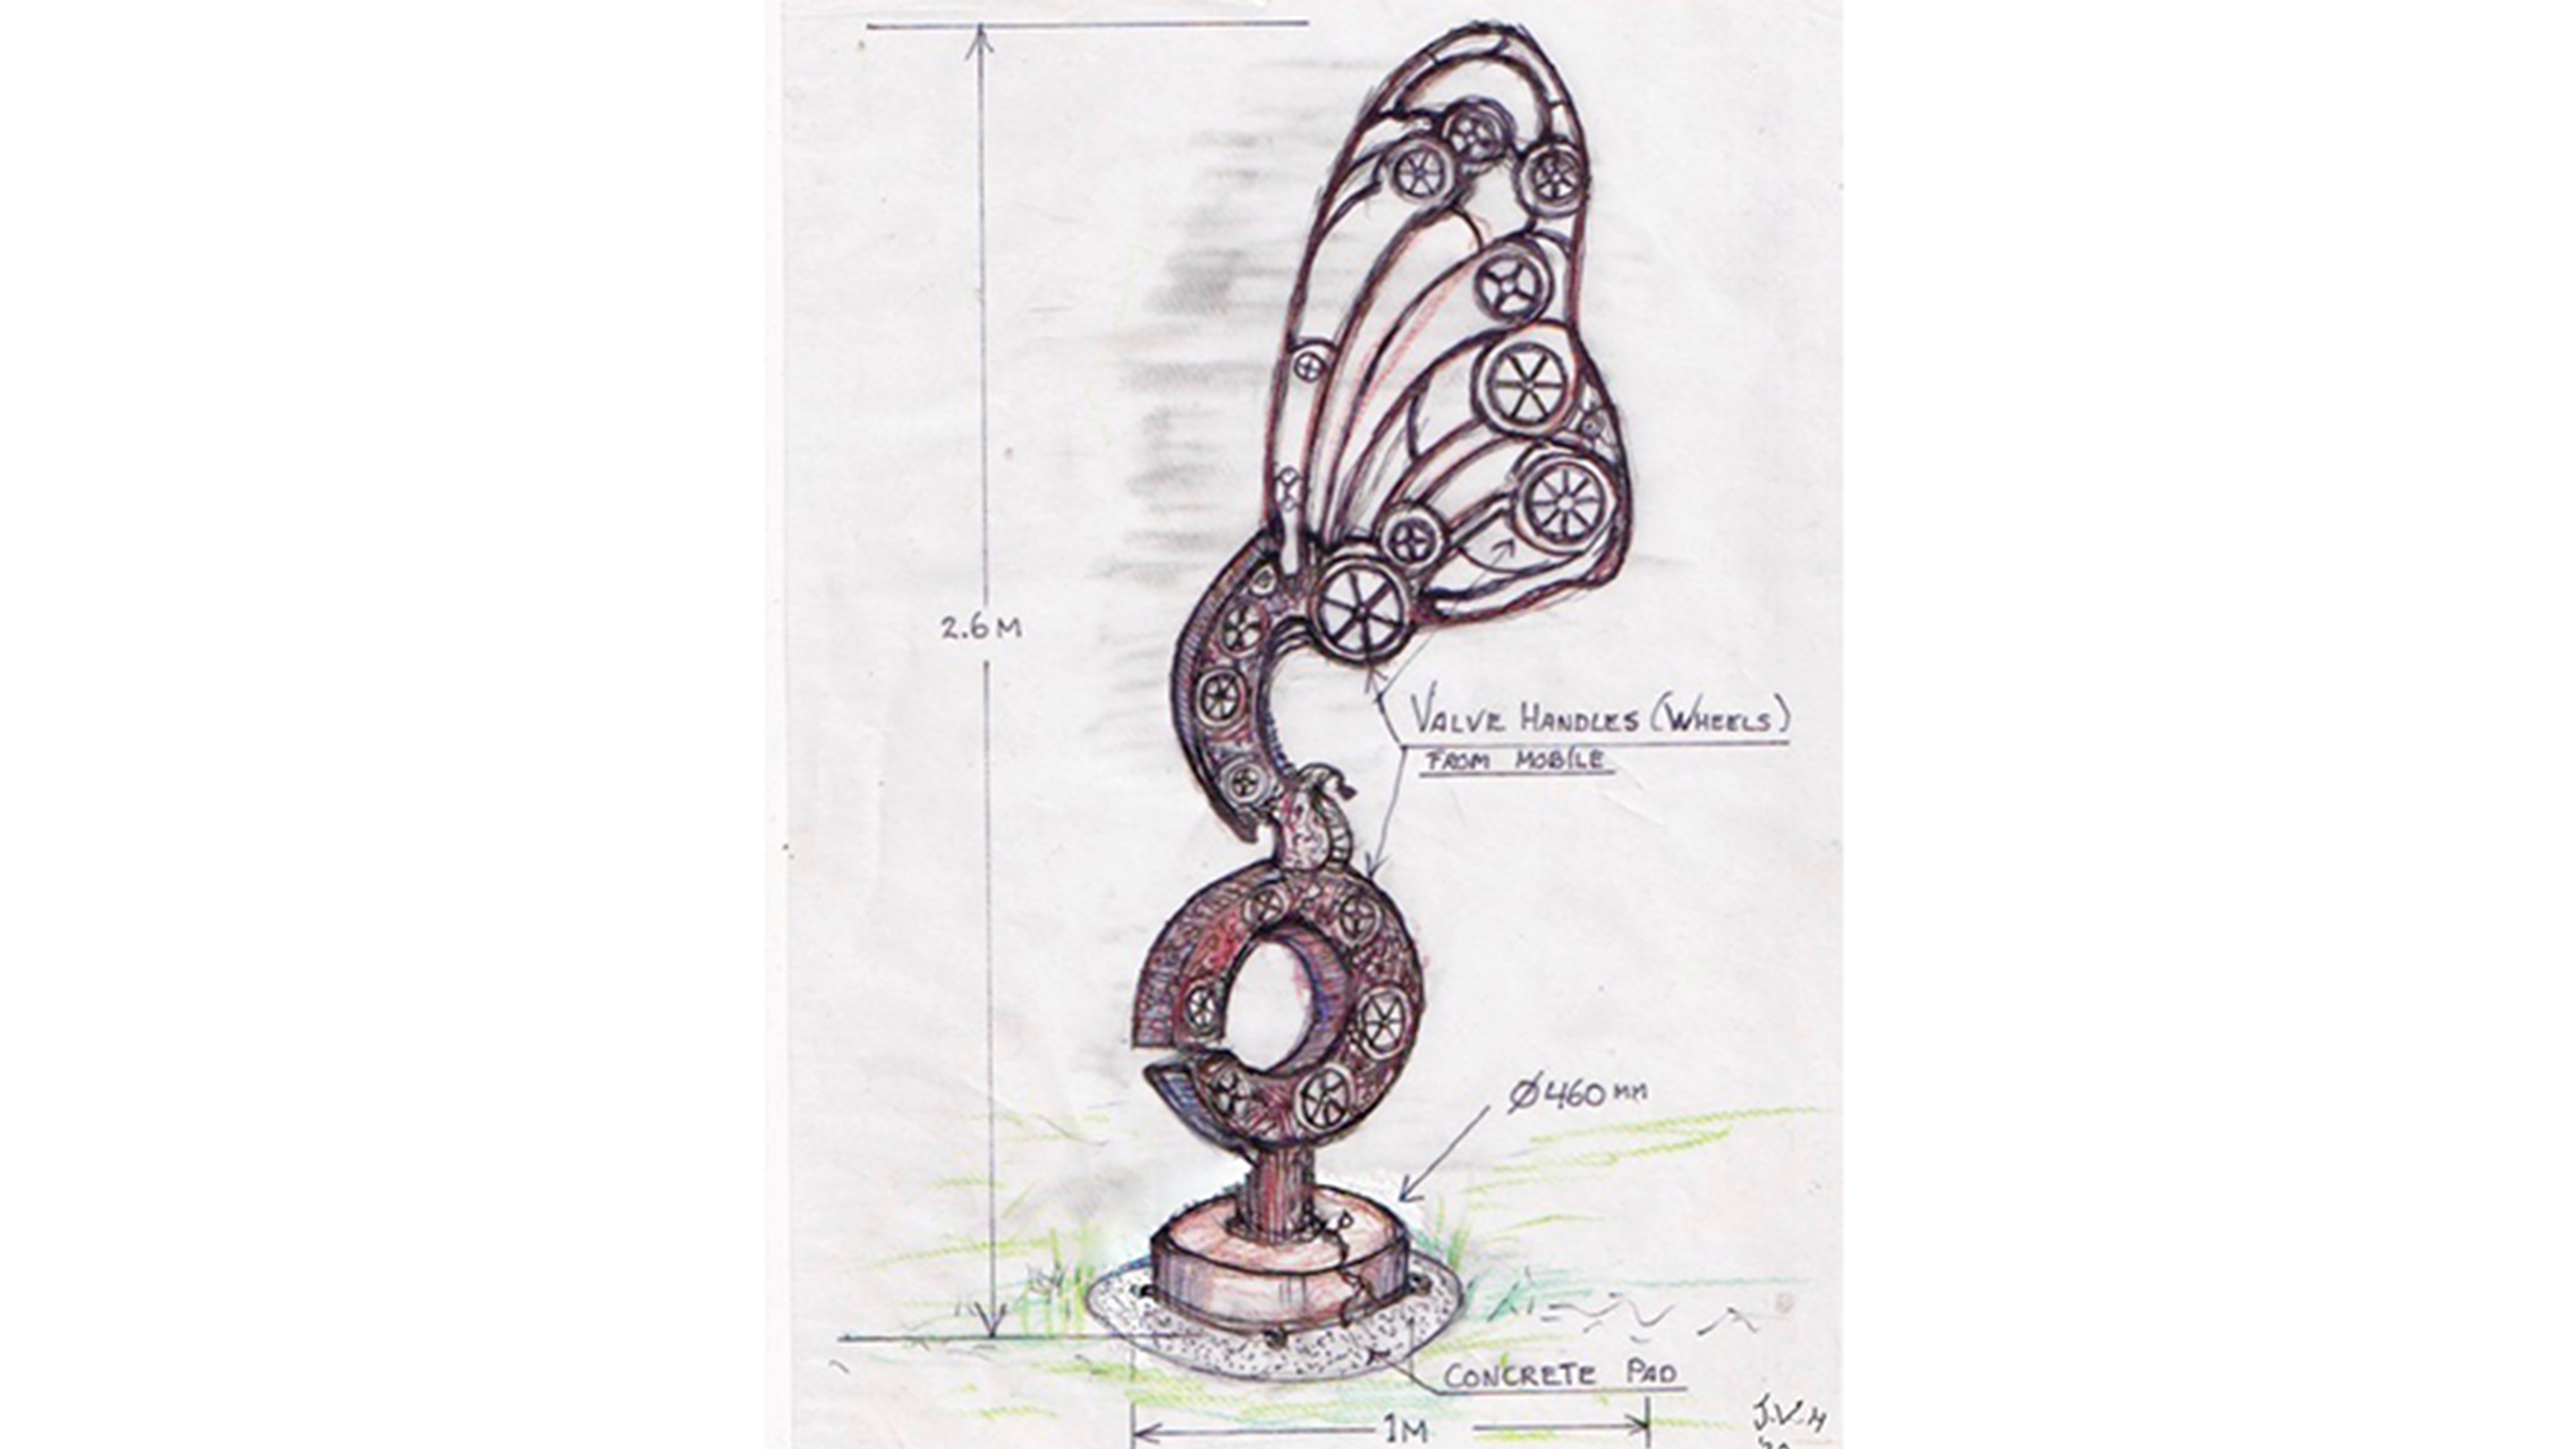 Jos Van Hulsen's sketch for the proposed sculpture.